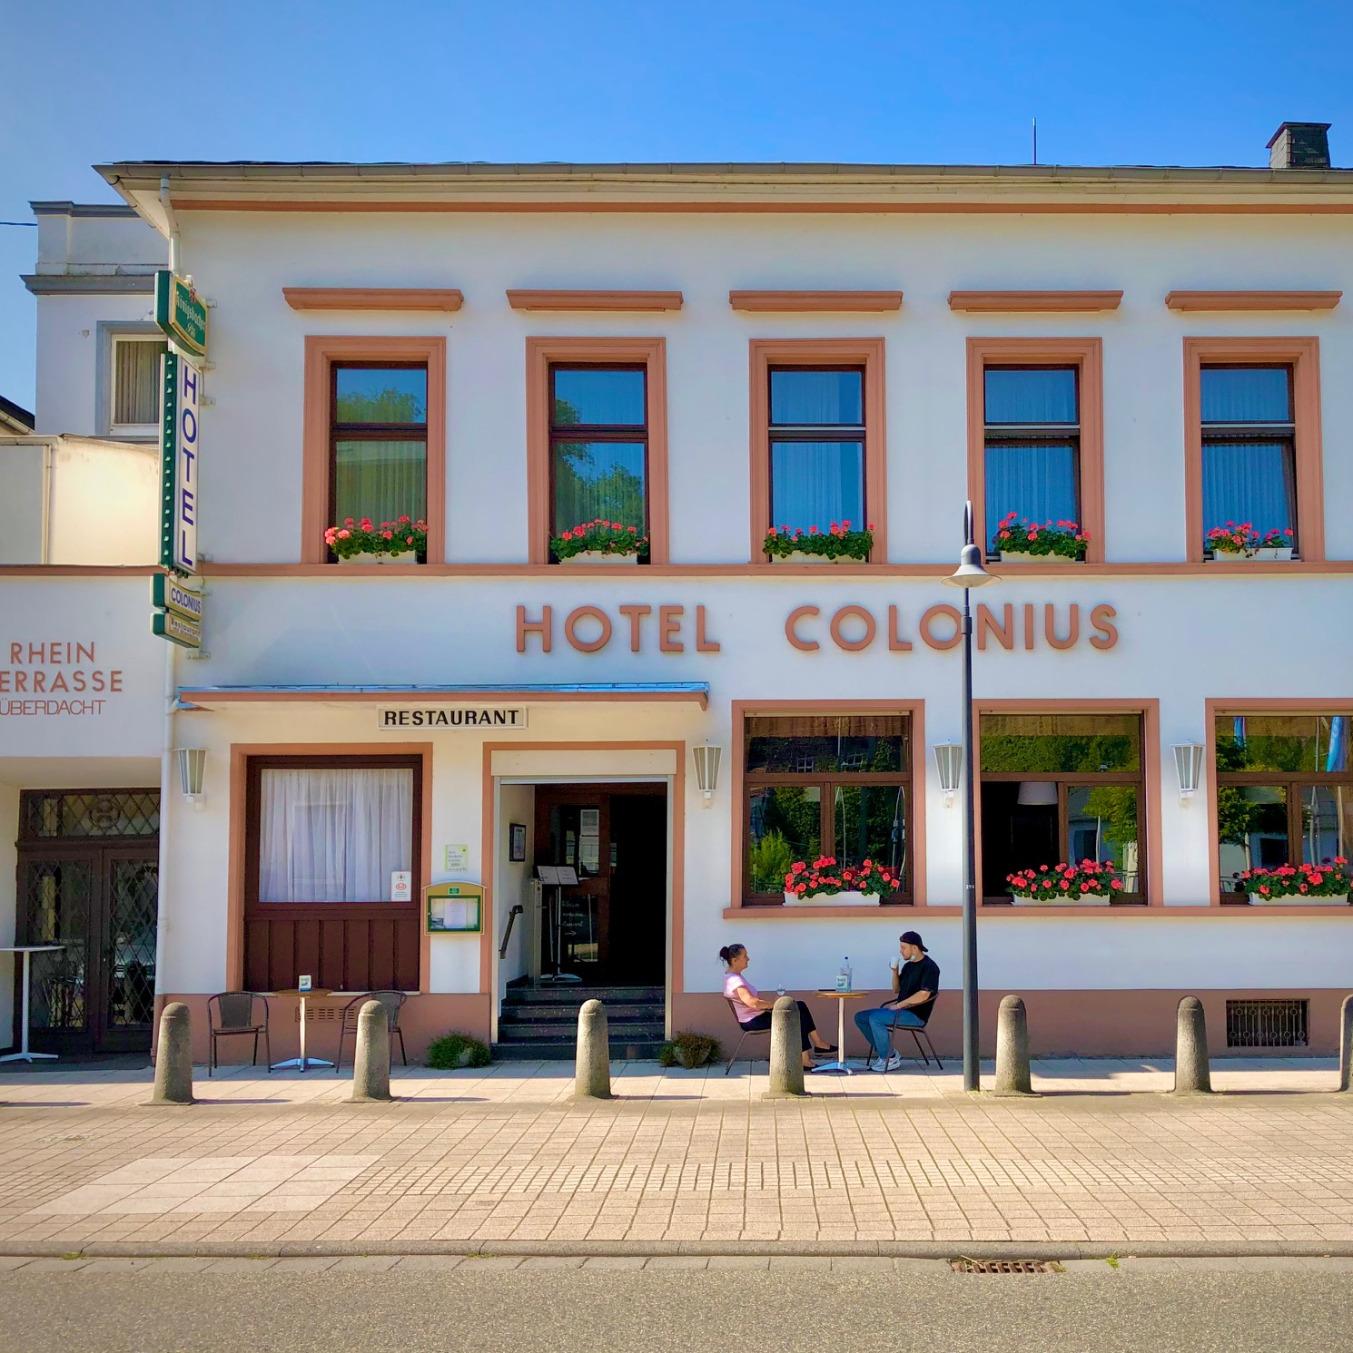 Restaurant "Hotel Restaurant Colonius" in Sankt Goarshausen